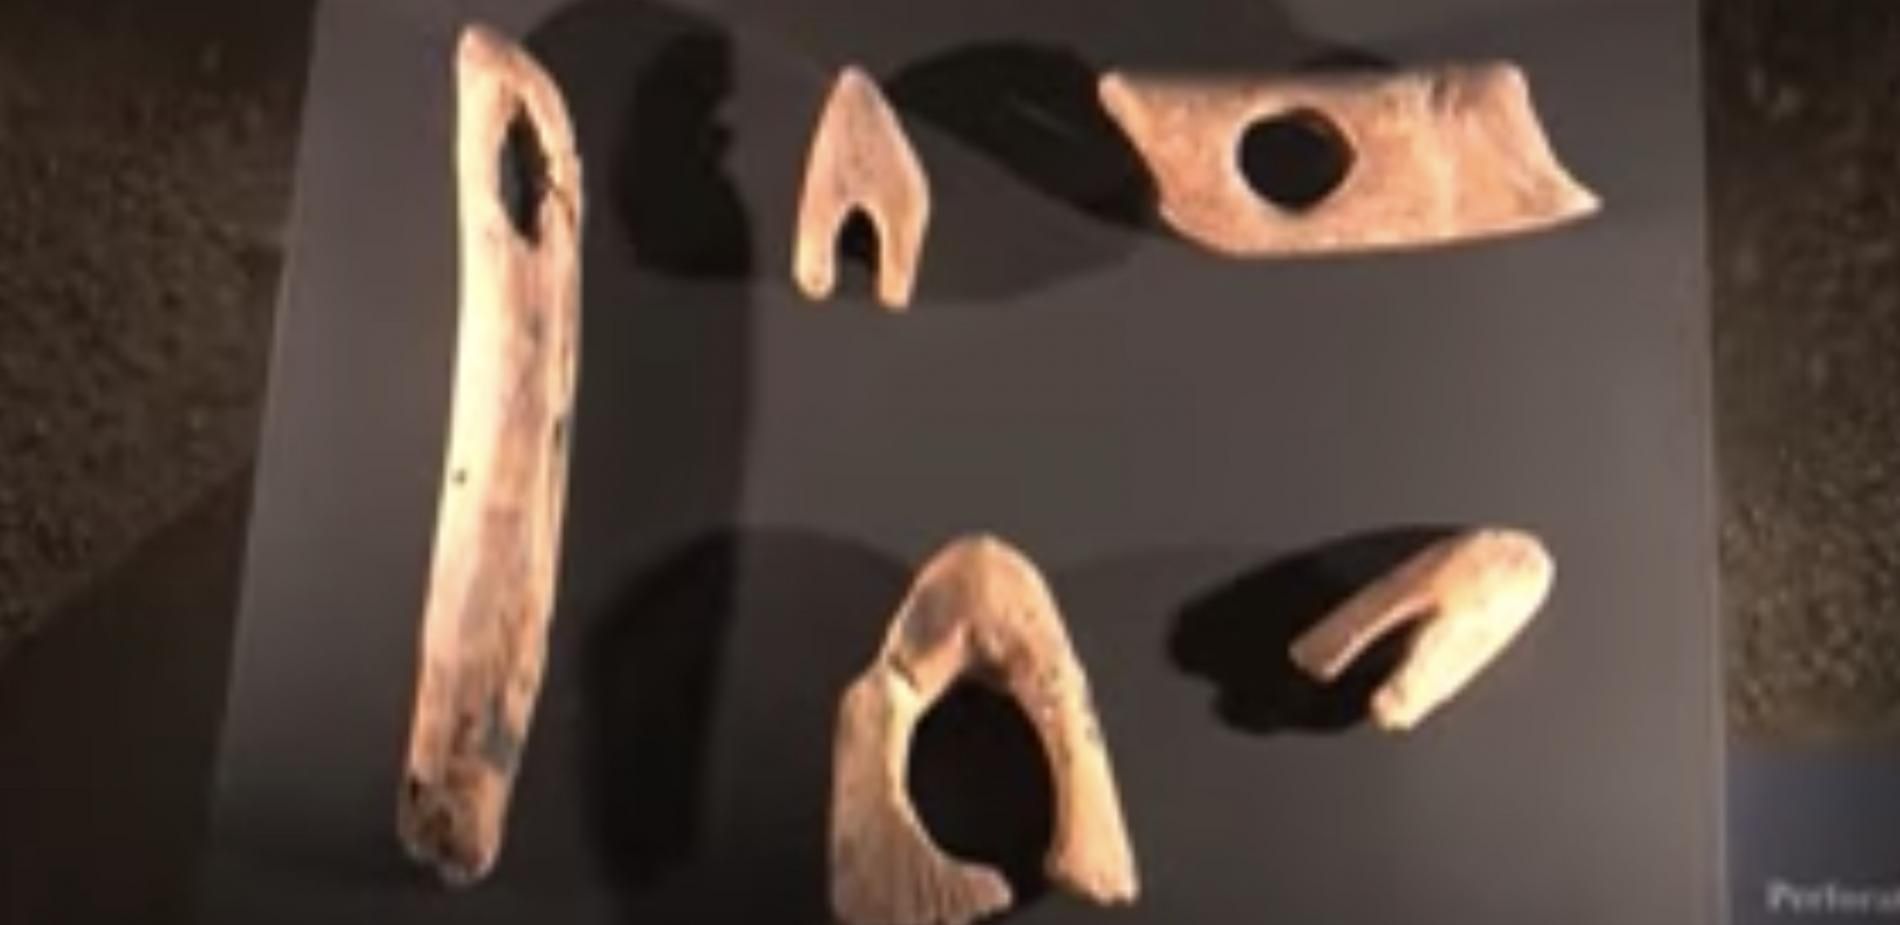 Des recherches dans la grotte préhistorique du Mas d'Azil